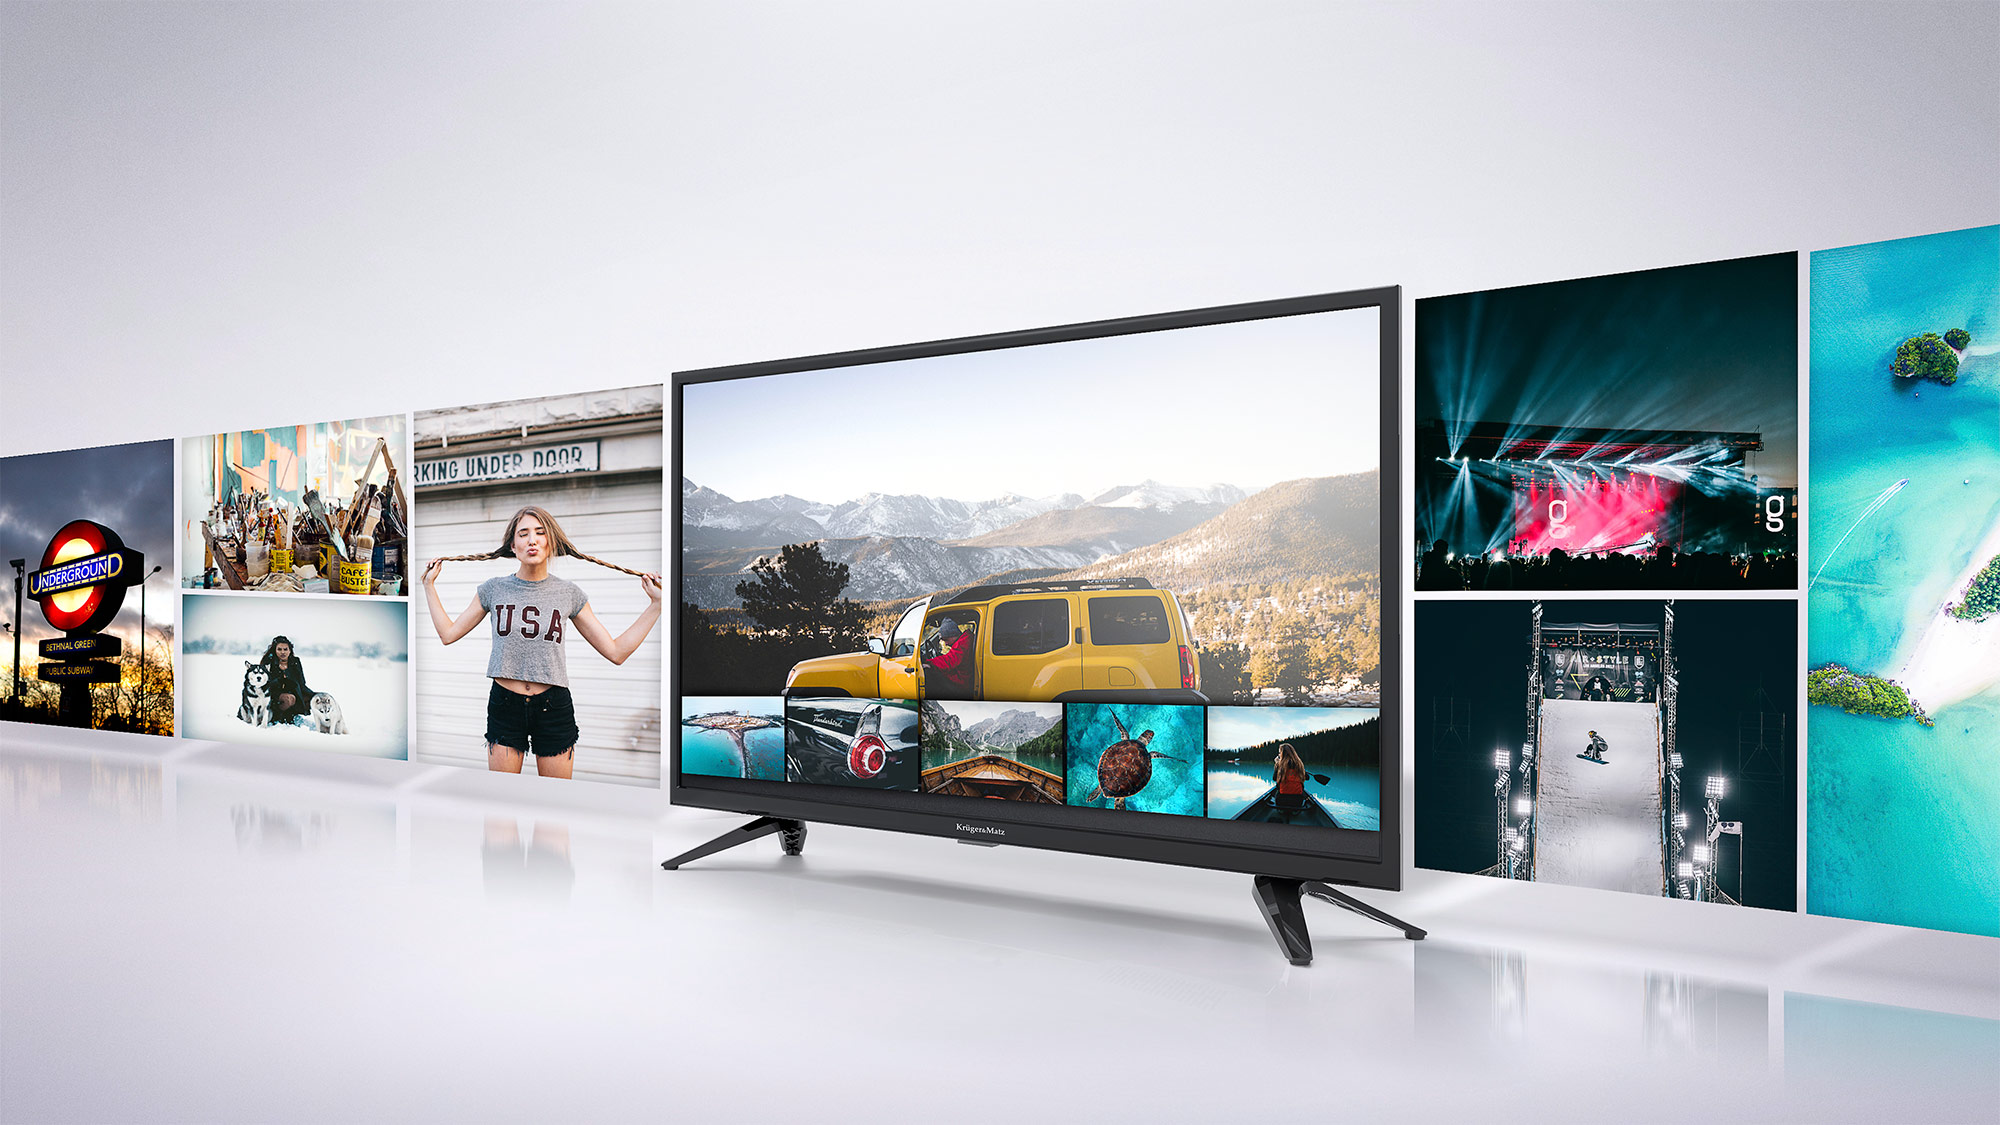 In plus, televizorul tau Kruger&Matz este dotat cu port USB care permite redarea filmelor preferate de pe diverse suporturi media USB, oferind confort si versatilitate.